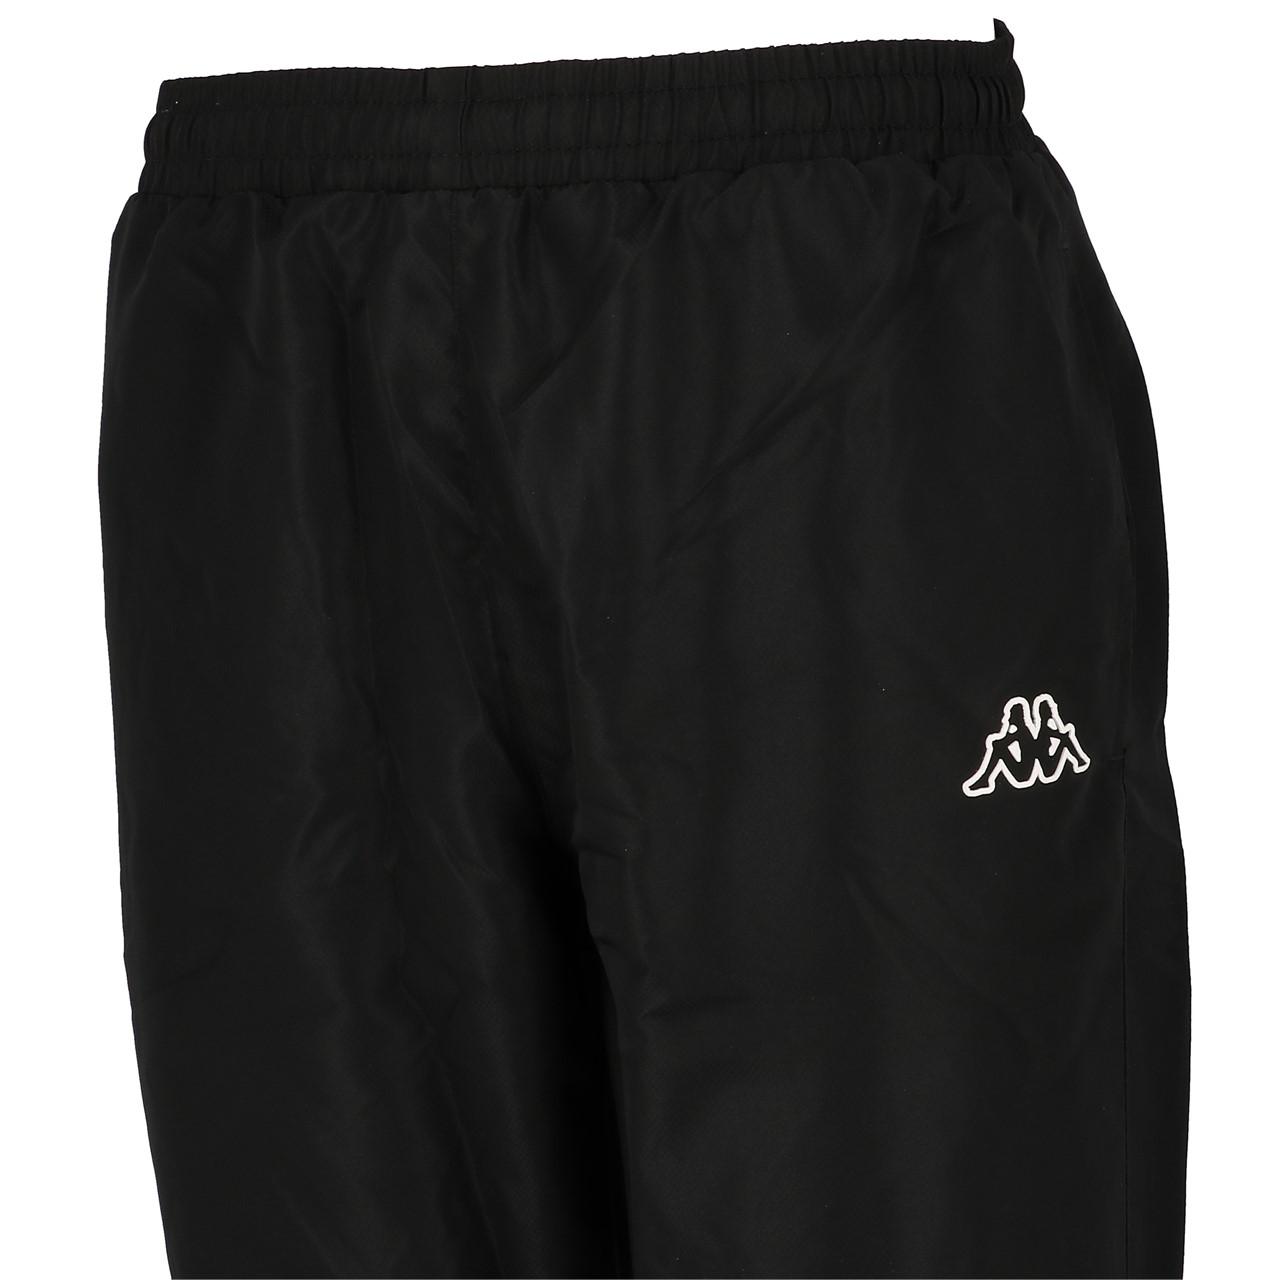 Pantalon de survêtement Panzeri Uni h noir/or jersey pant Noir 64555 Neuf 